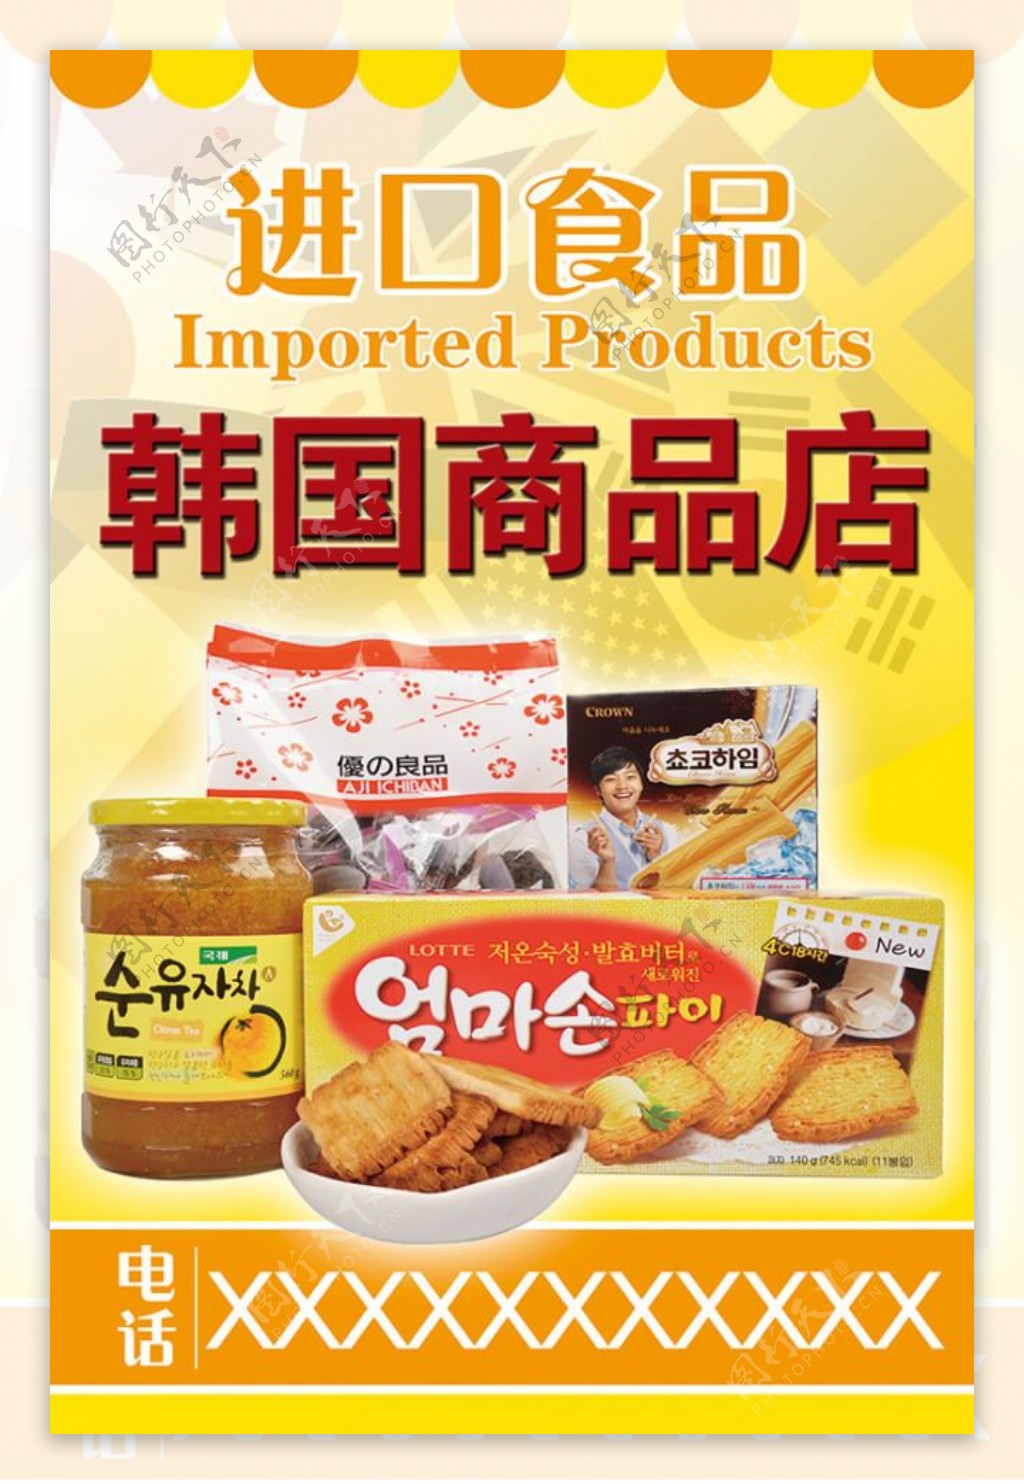 进口食品韩国商品店宣传海报